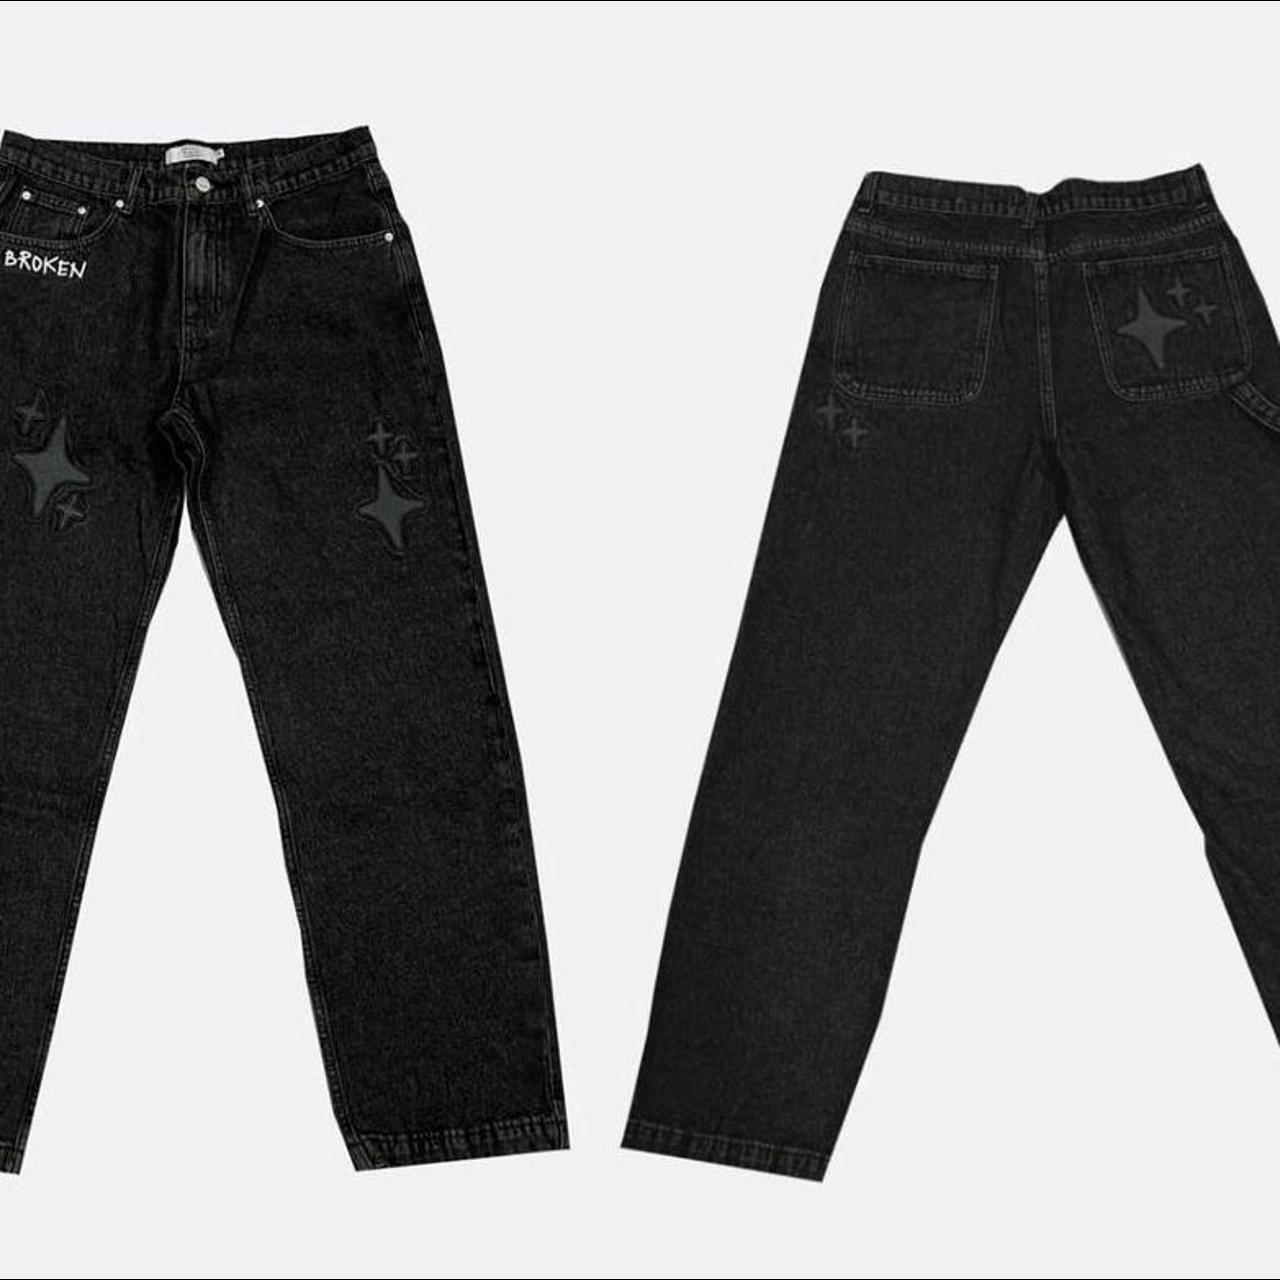 Broken planet market washed black jeans sized 34... - Depop